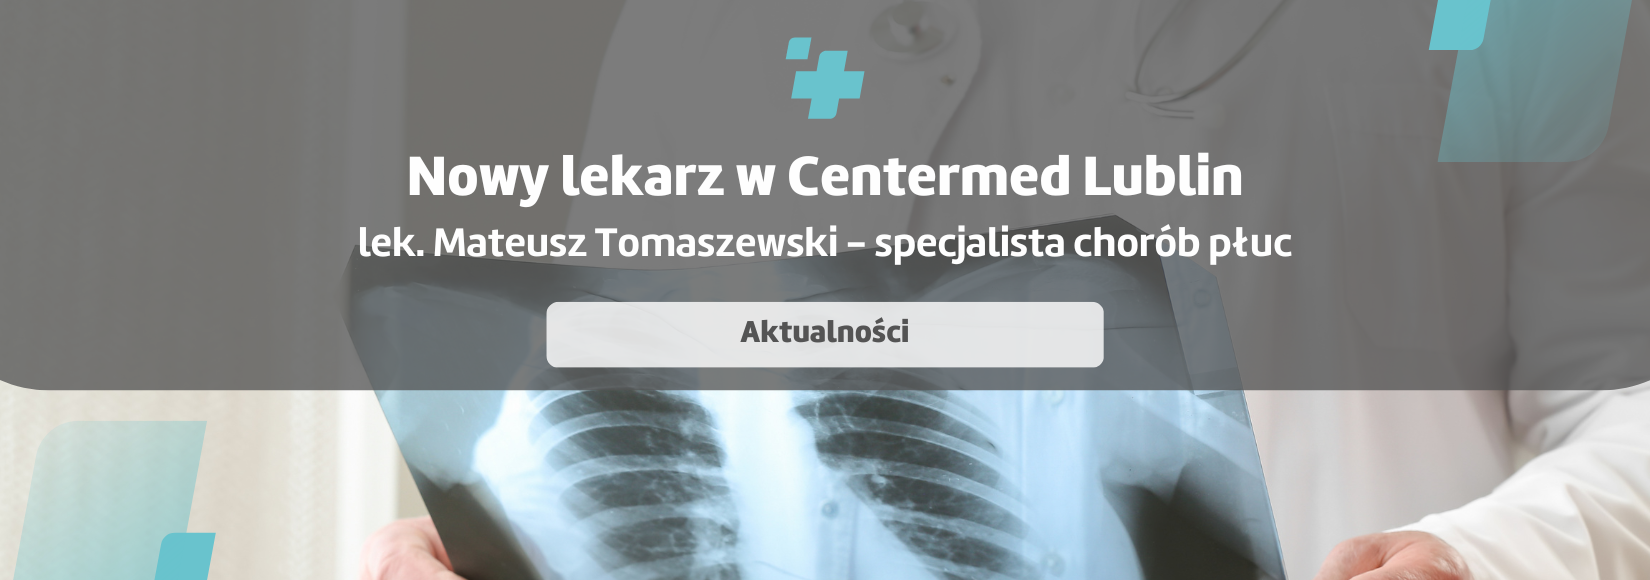 Nowy lekarz w Poradni Gruźlicy i Chorób Płuc w Lublinie